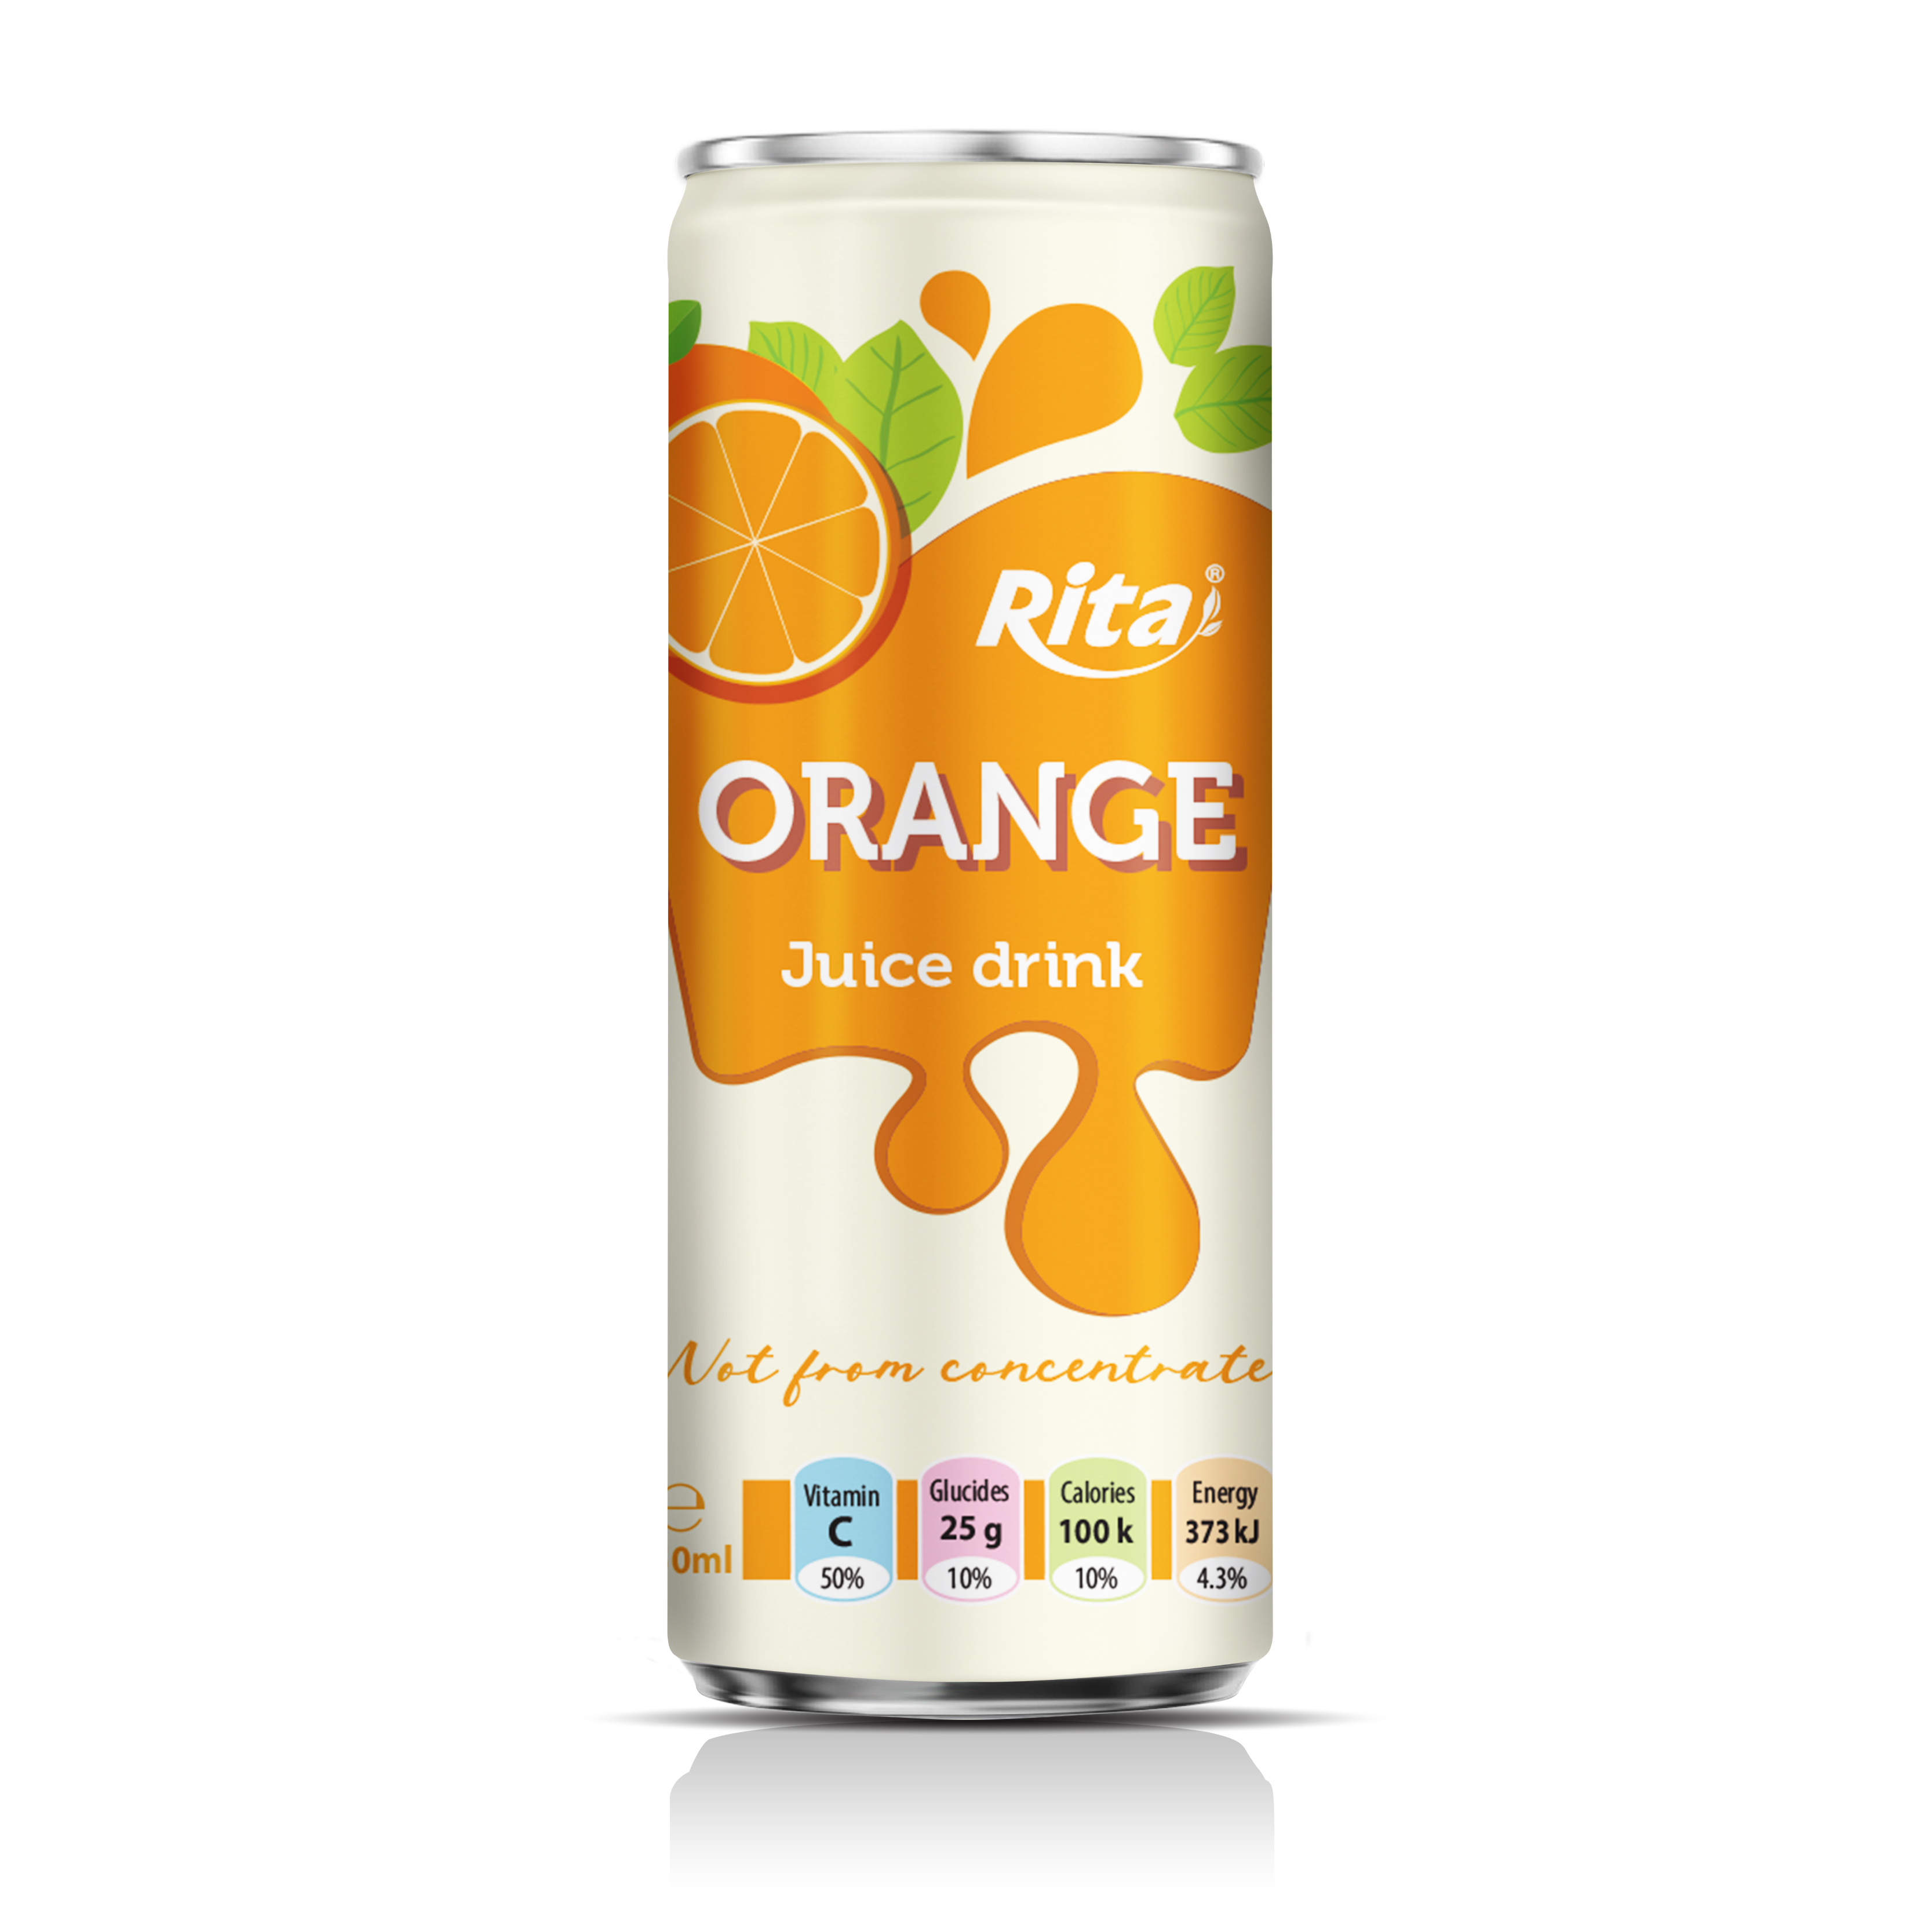 Fresh natural orange fruit juice